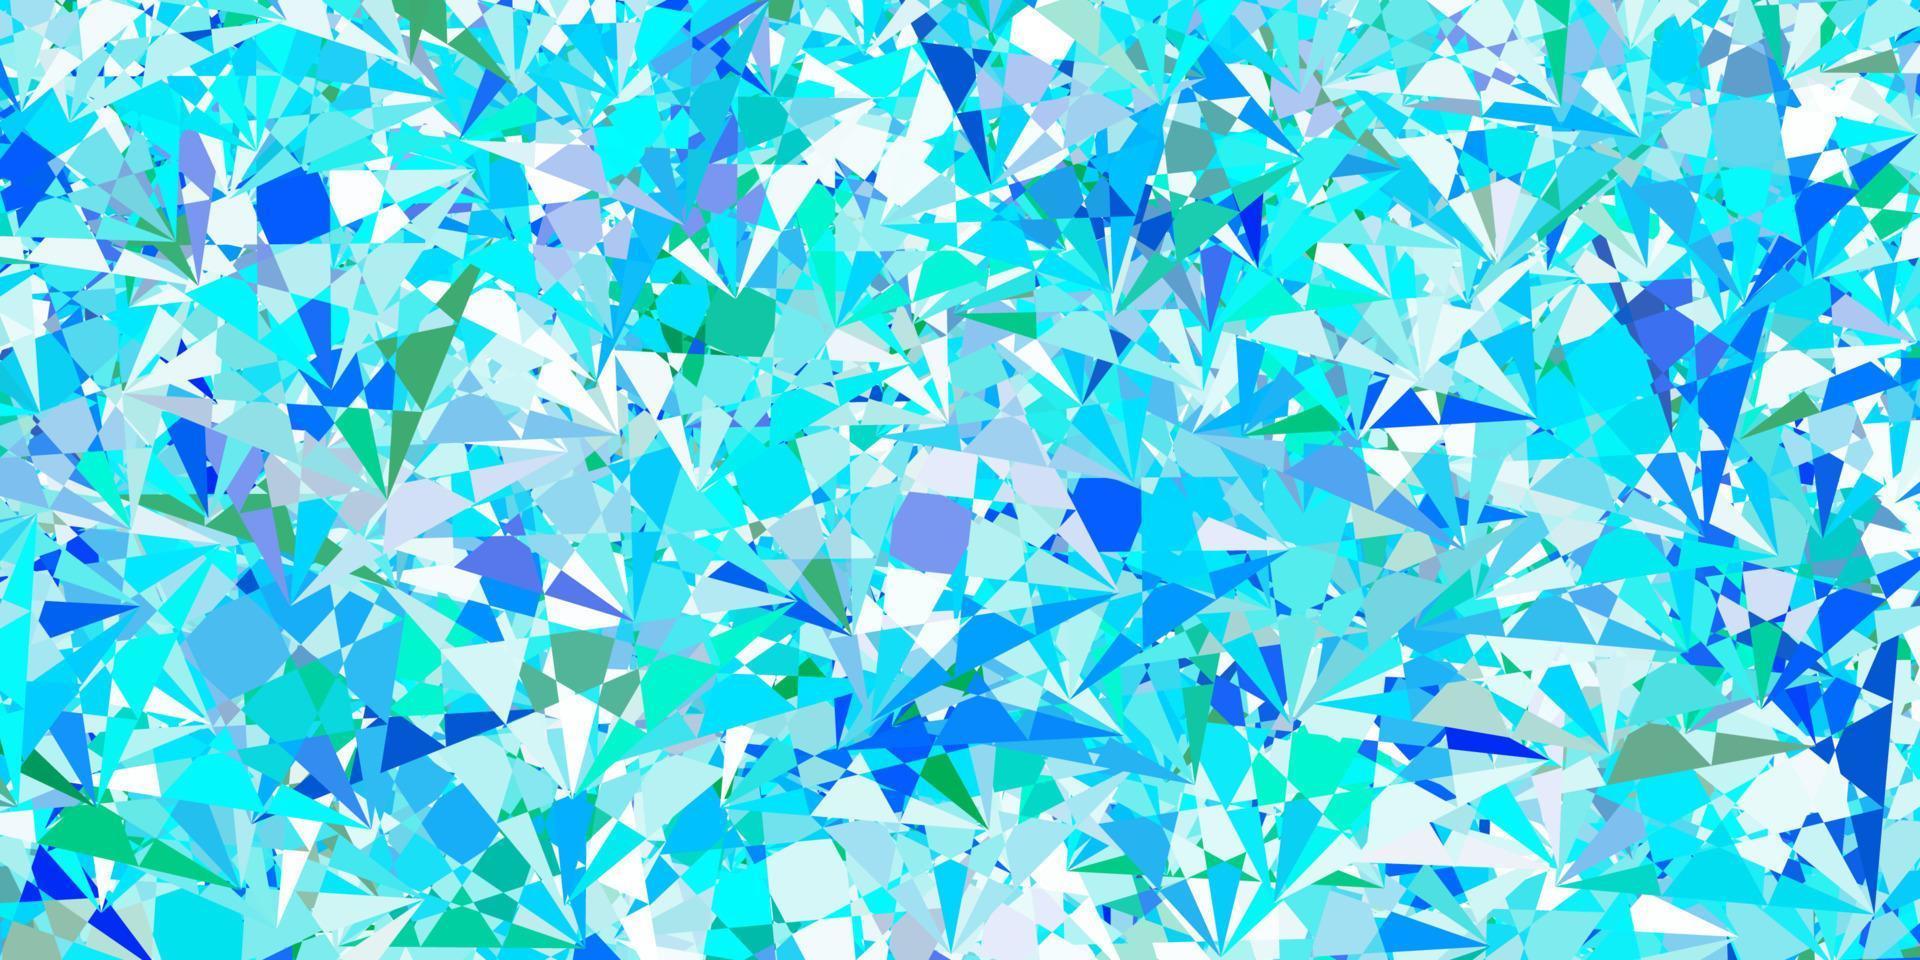 Fondo de vector azul claro, verde con formas poligonales.